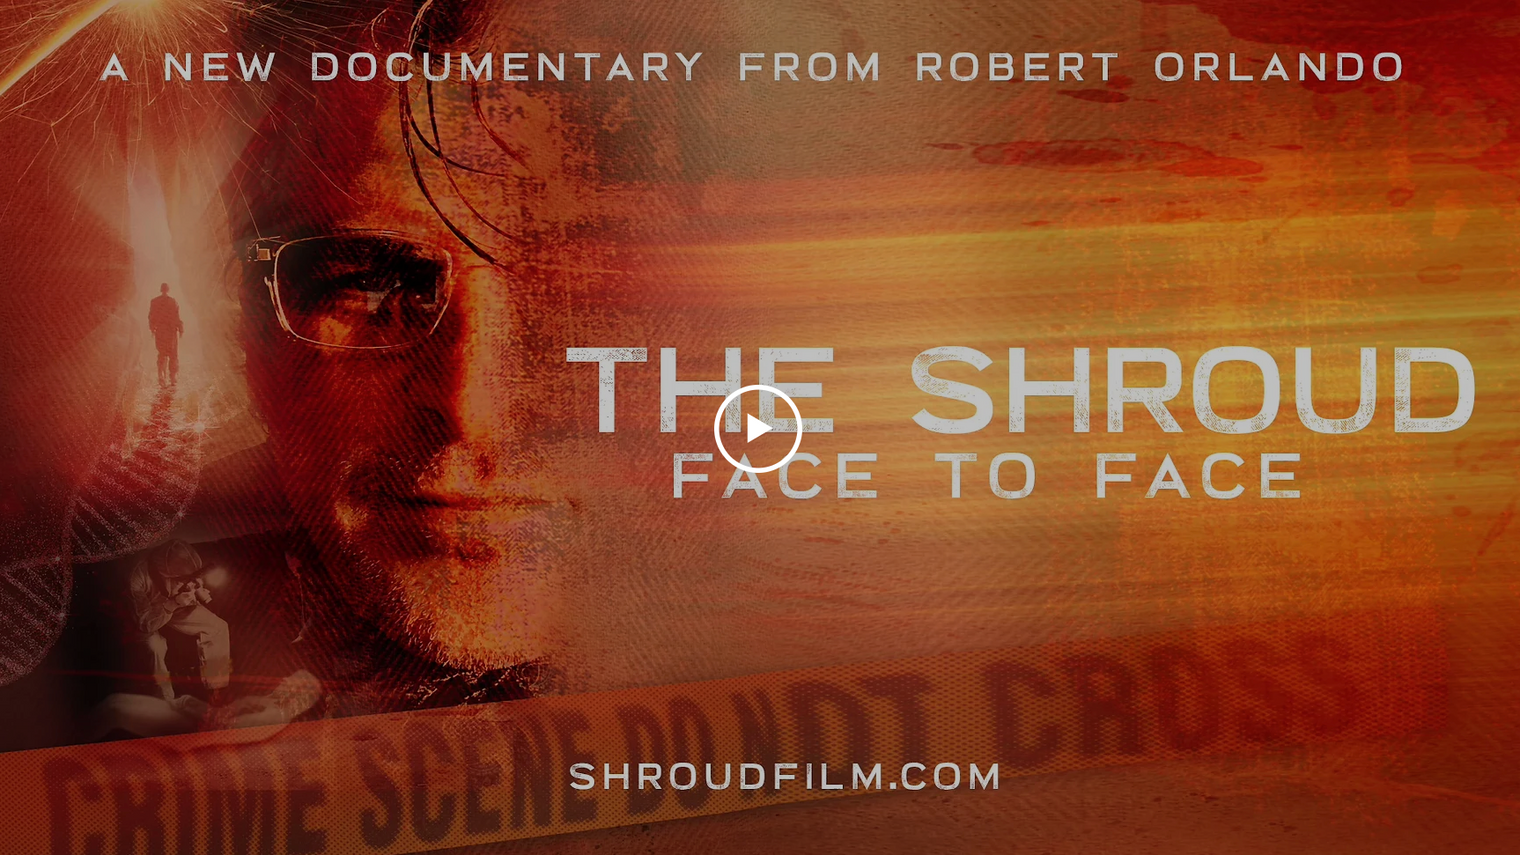 The Shroud Film Teasers